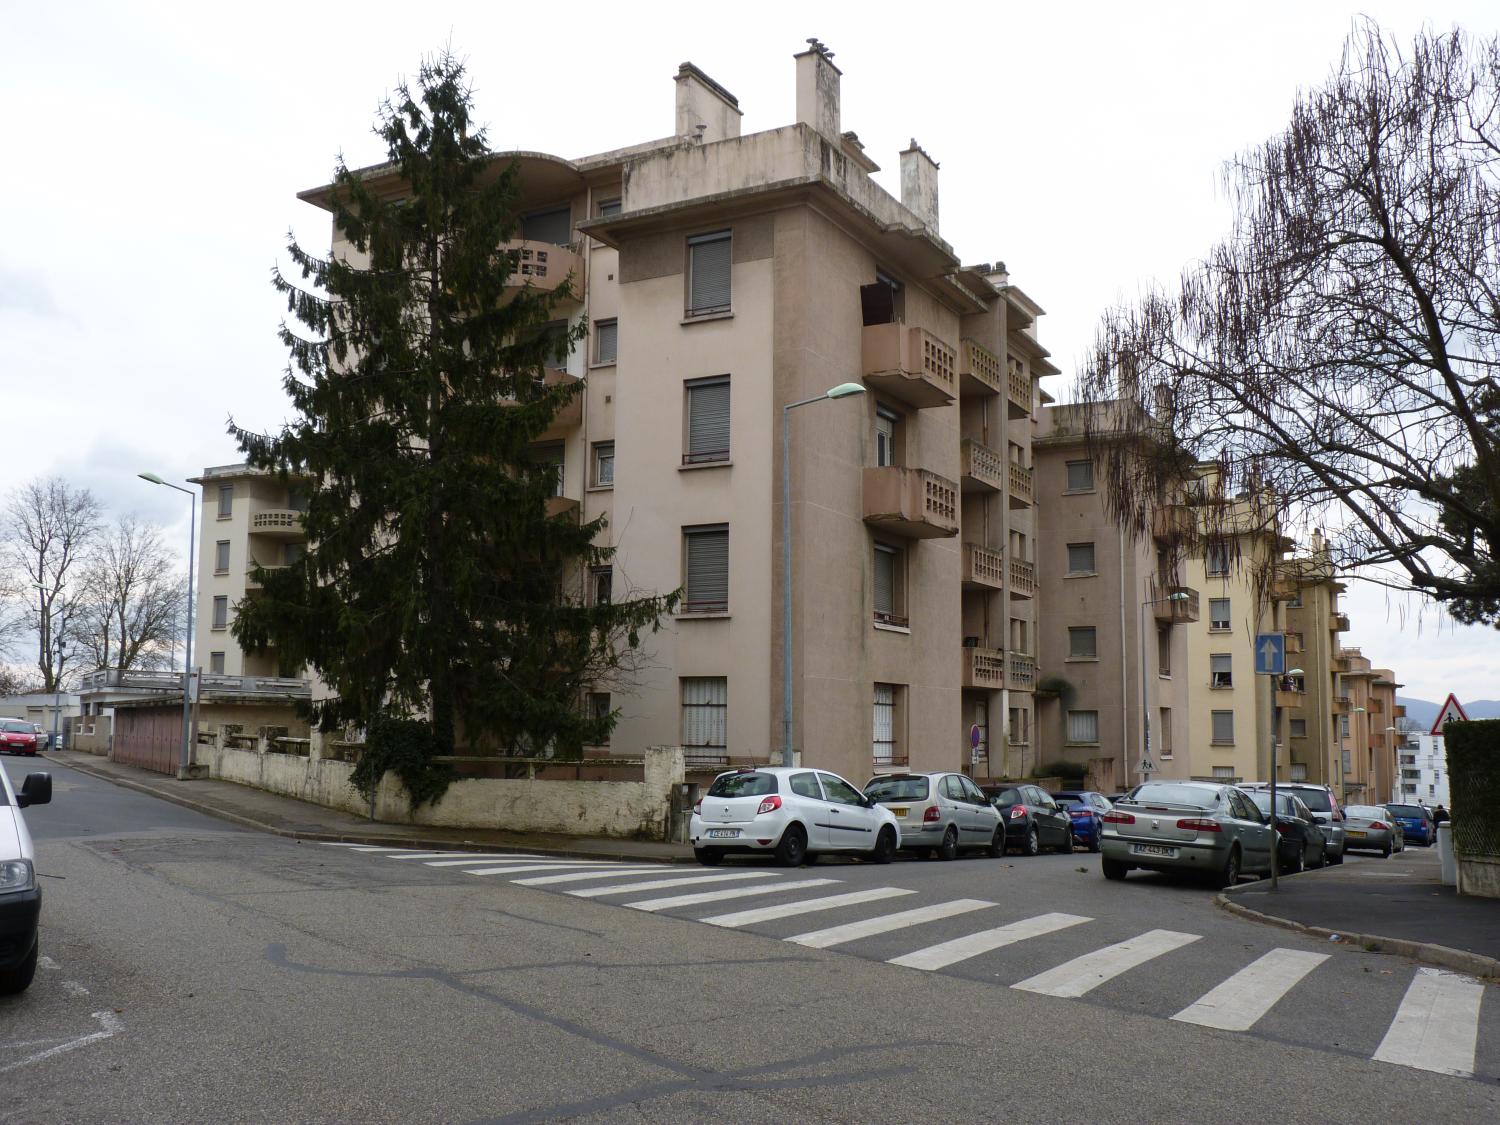 Cité HBM Montessuy Caluire-et-Cuire démolie en 2015